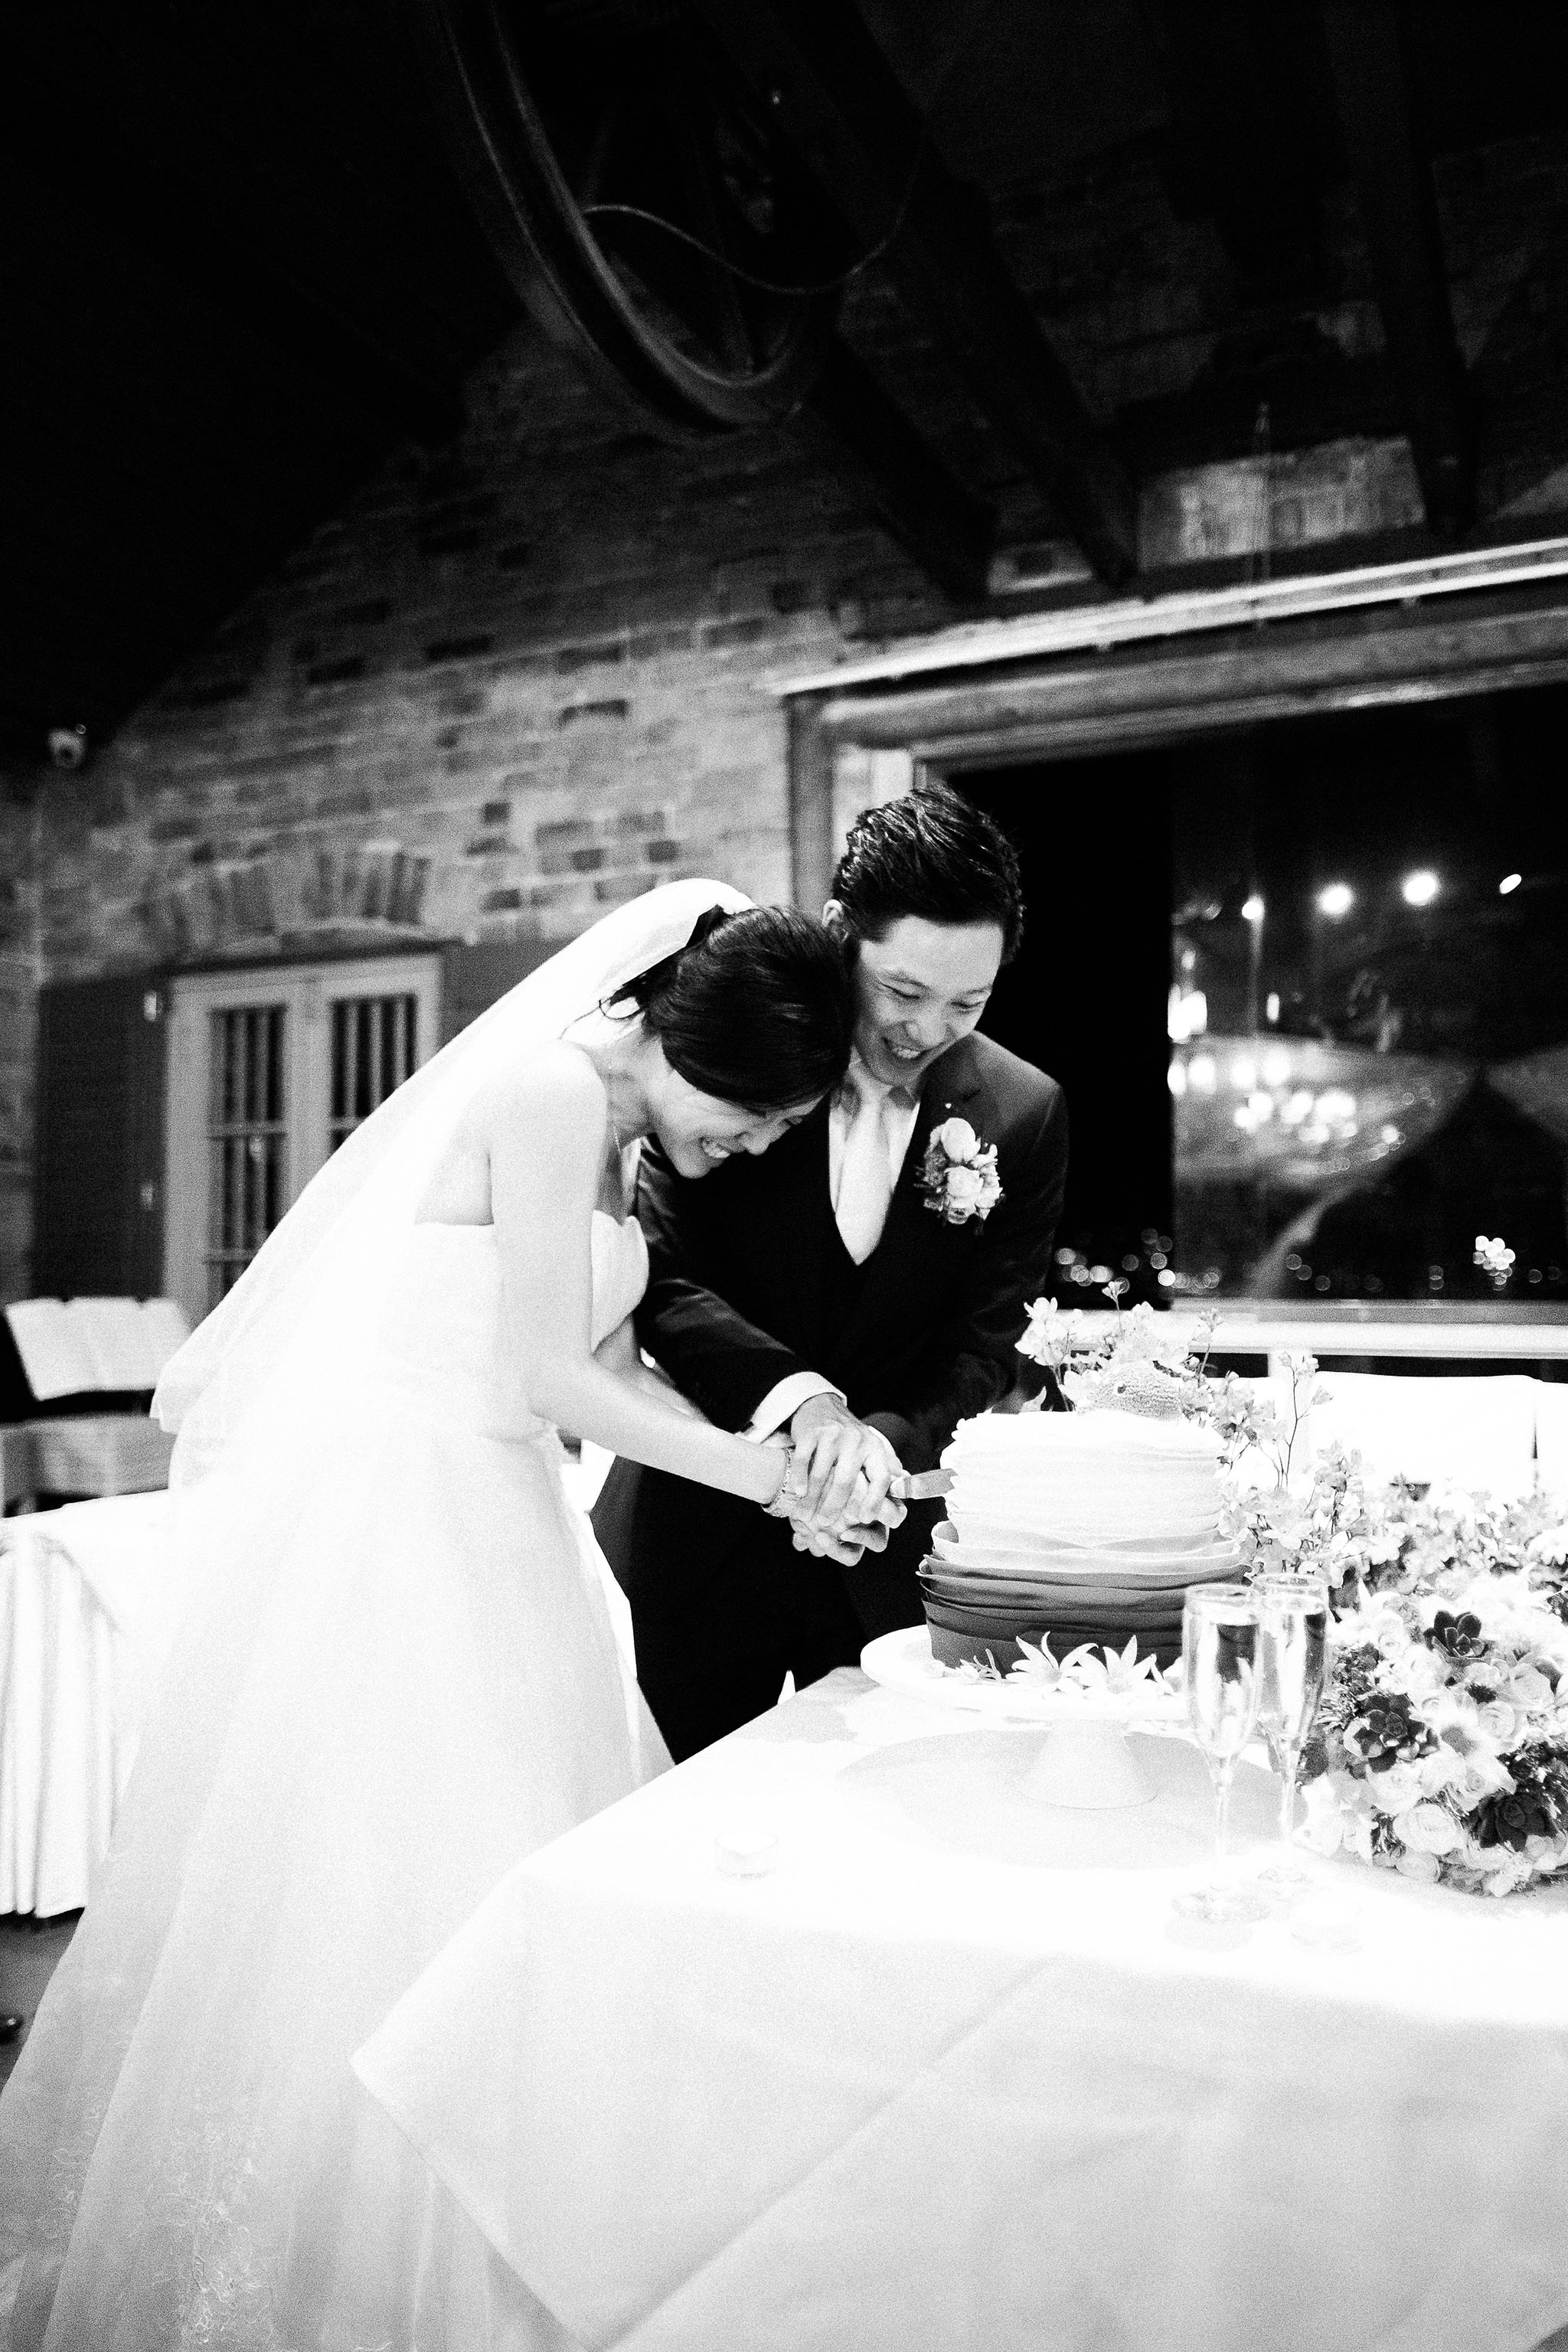 Sydney-The-Rocks-Italian-Village-Wedding-Reception-Cake-Cutting